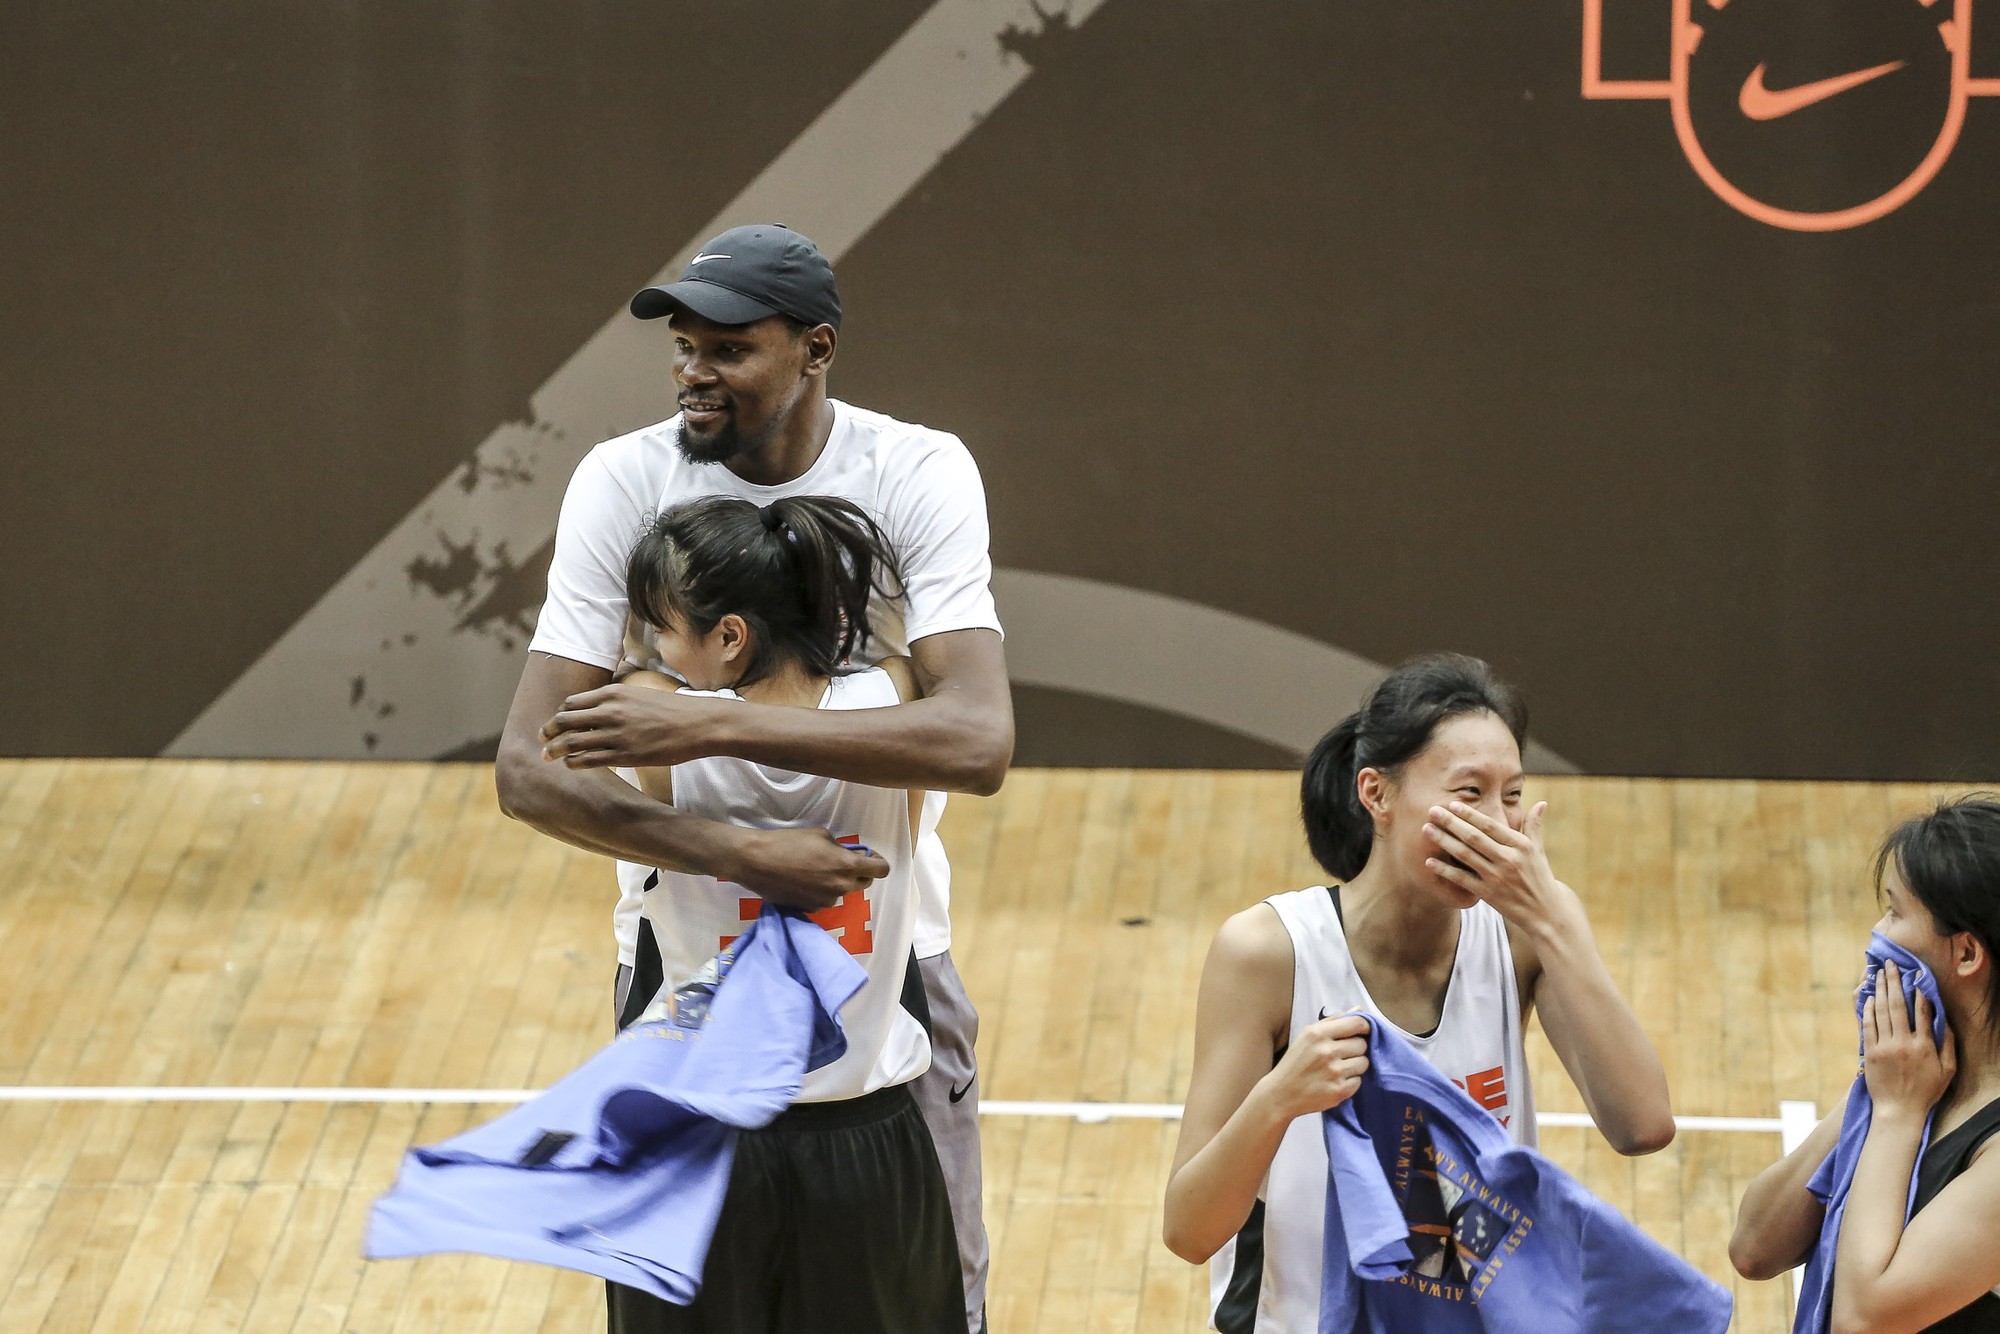 Đột nhập một buổi giao lưu và quảng bá thương hiệu Nike của Kevin Durant tại Trung Quốc - Ảnh 9.